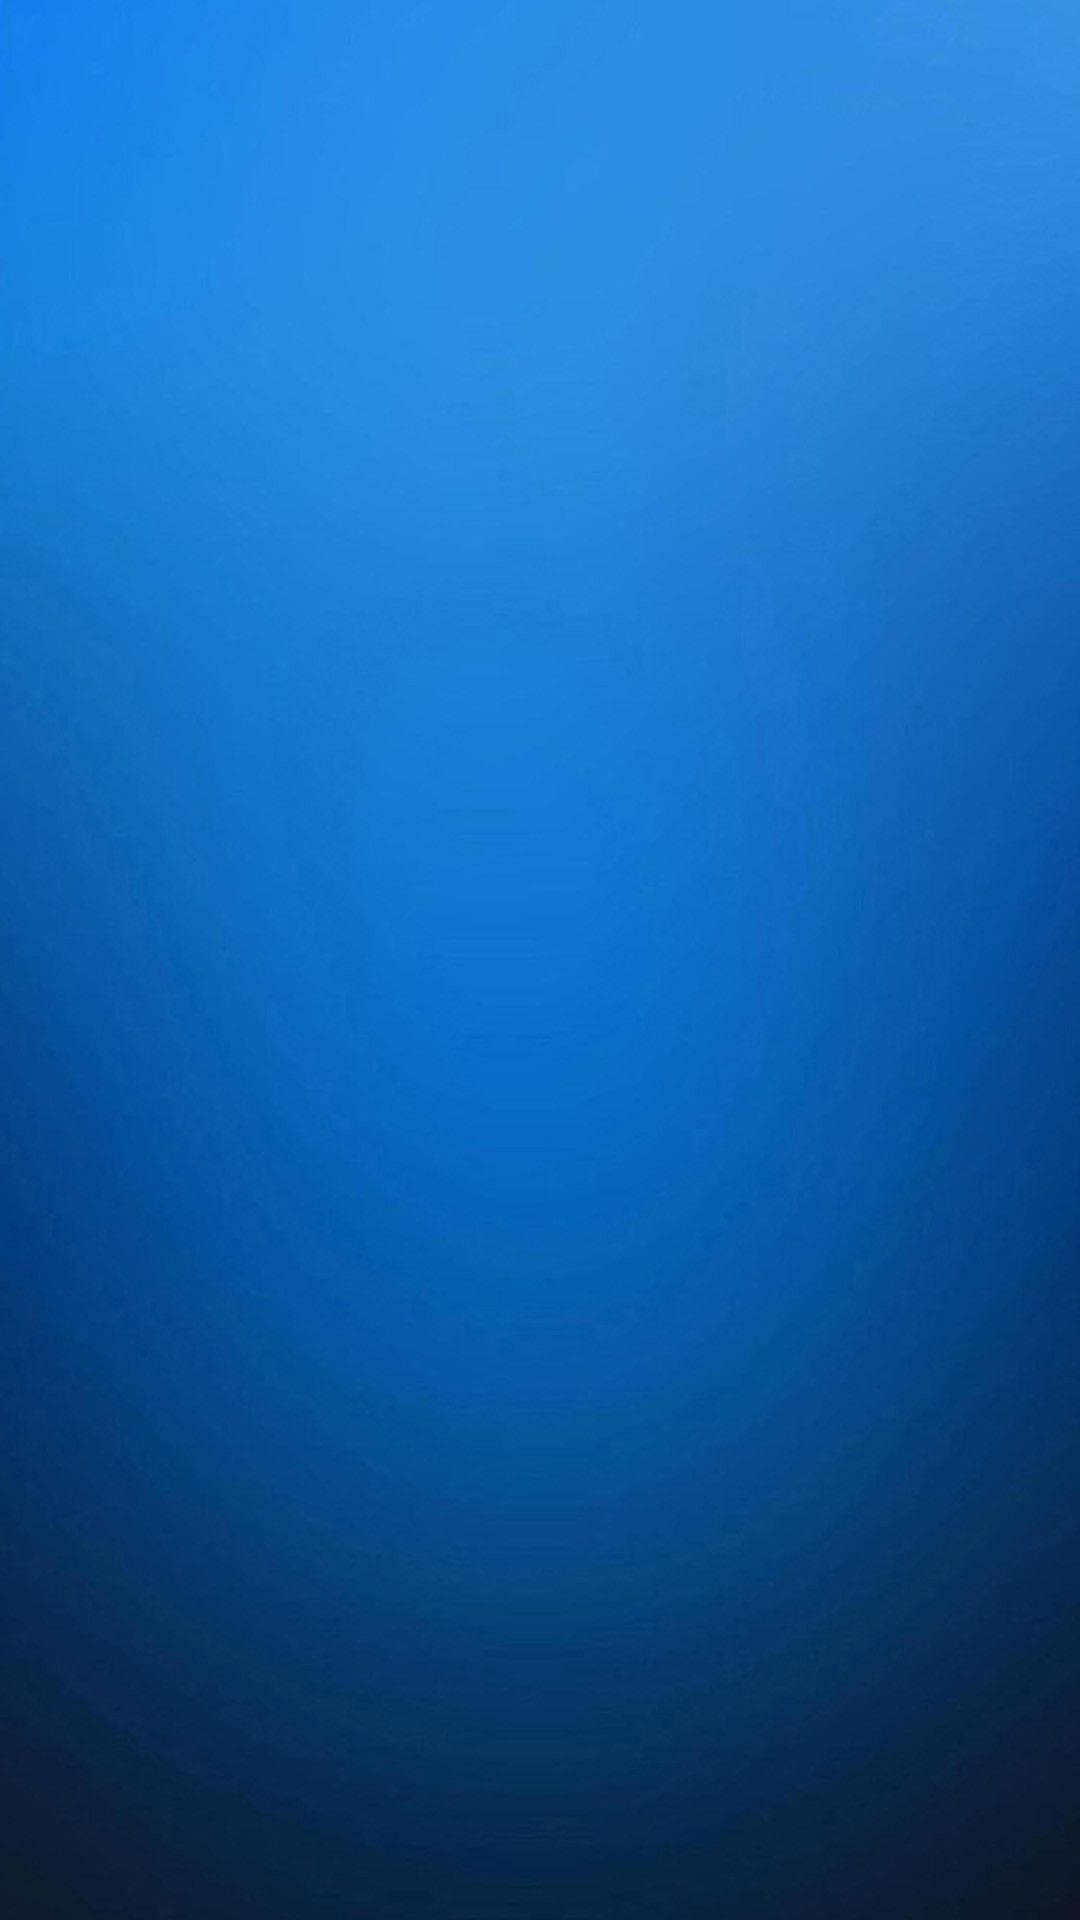 Minimalist Blue Iphone Wallpaper